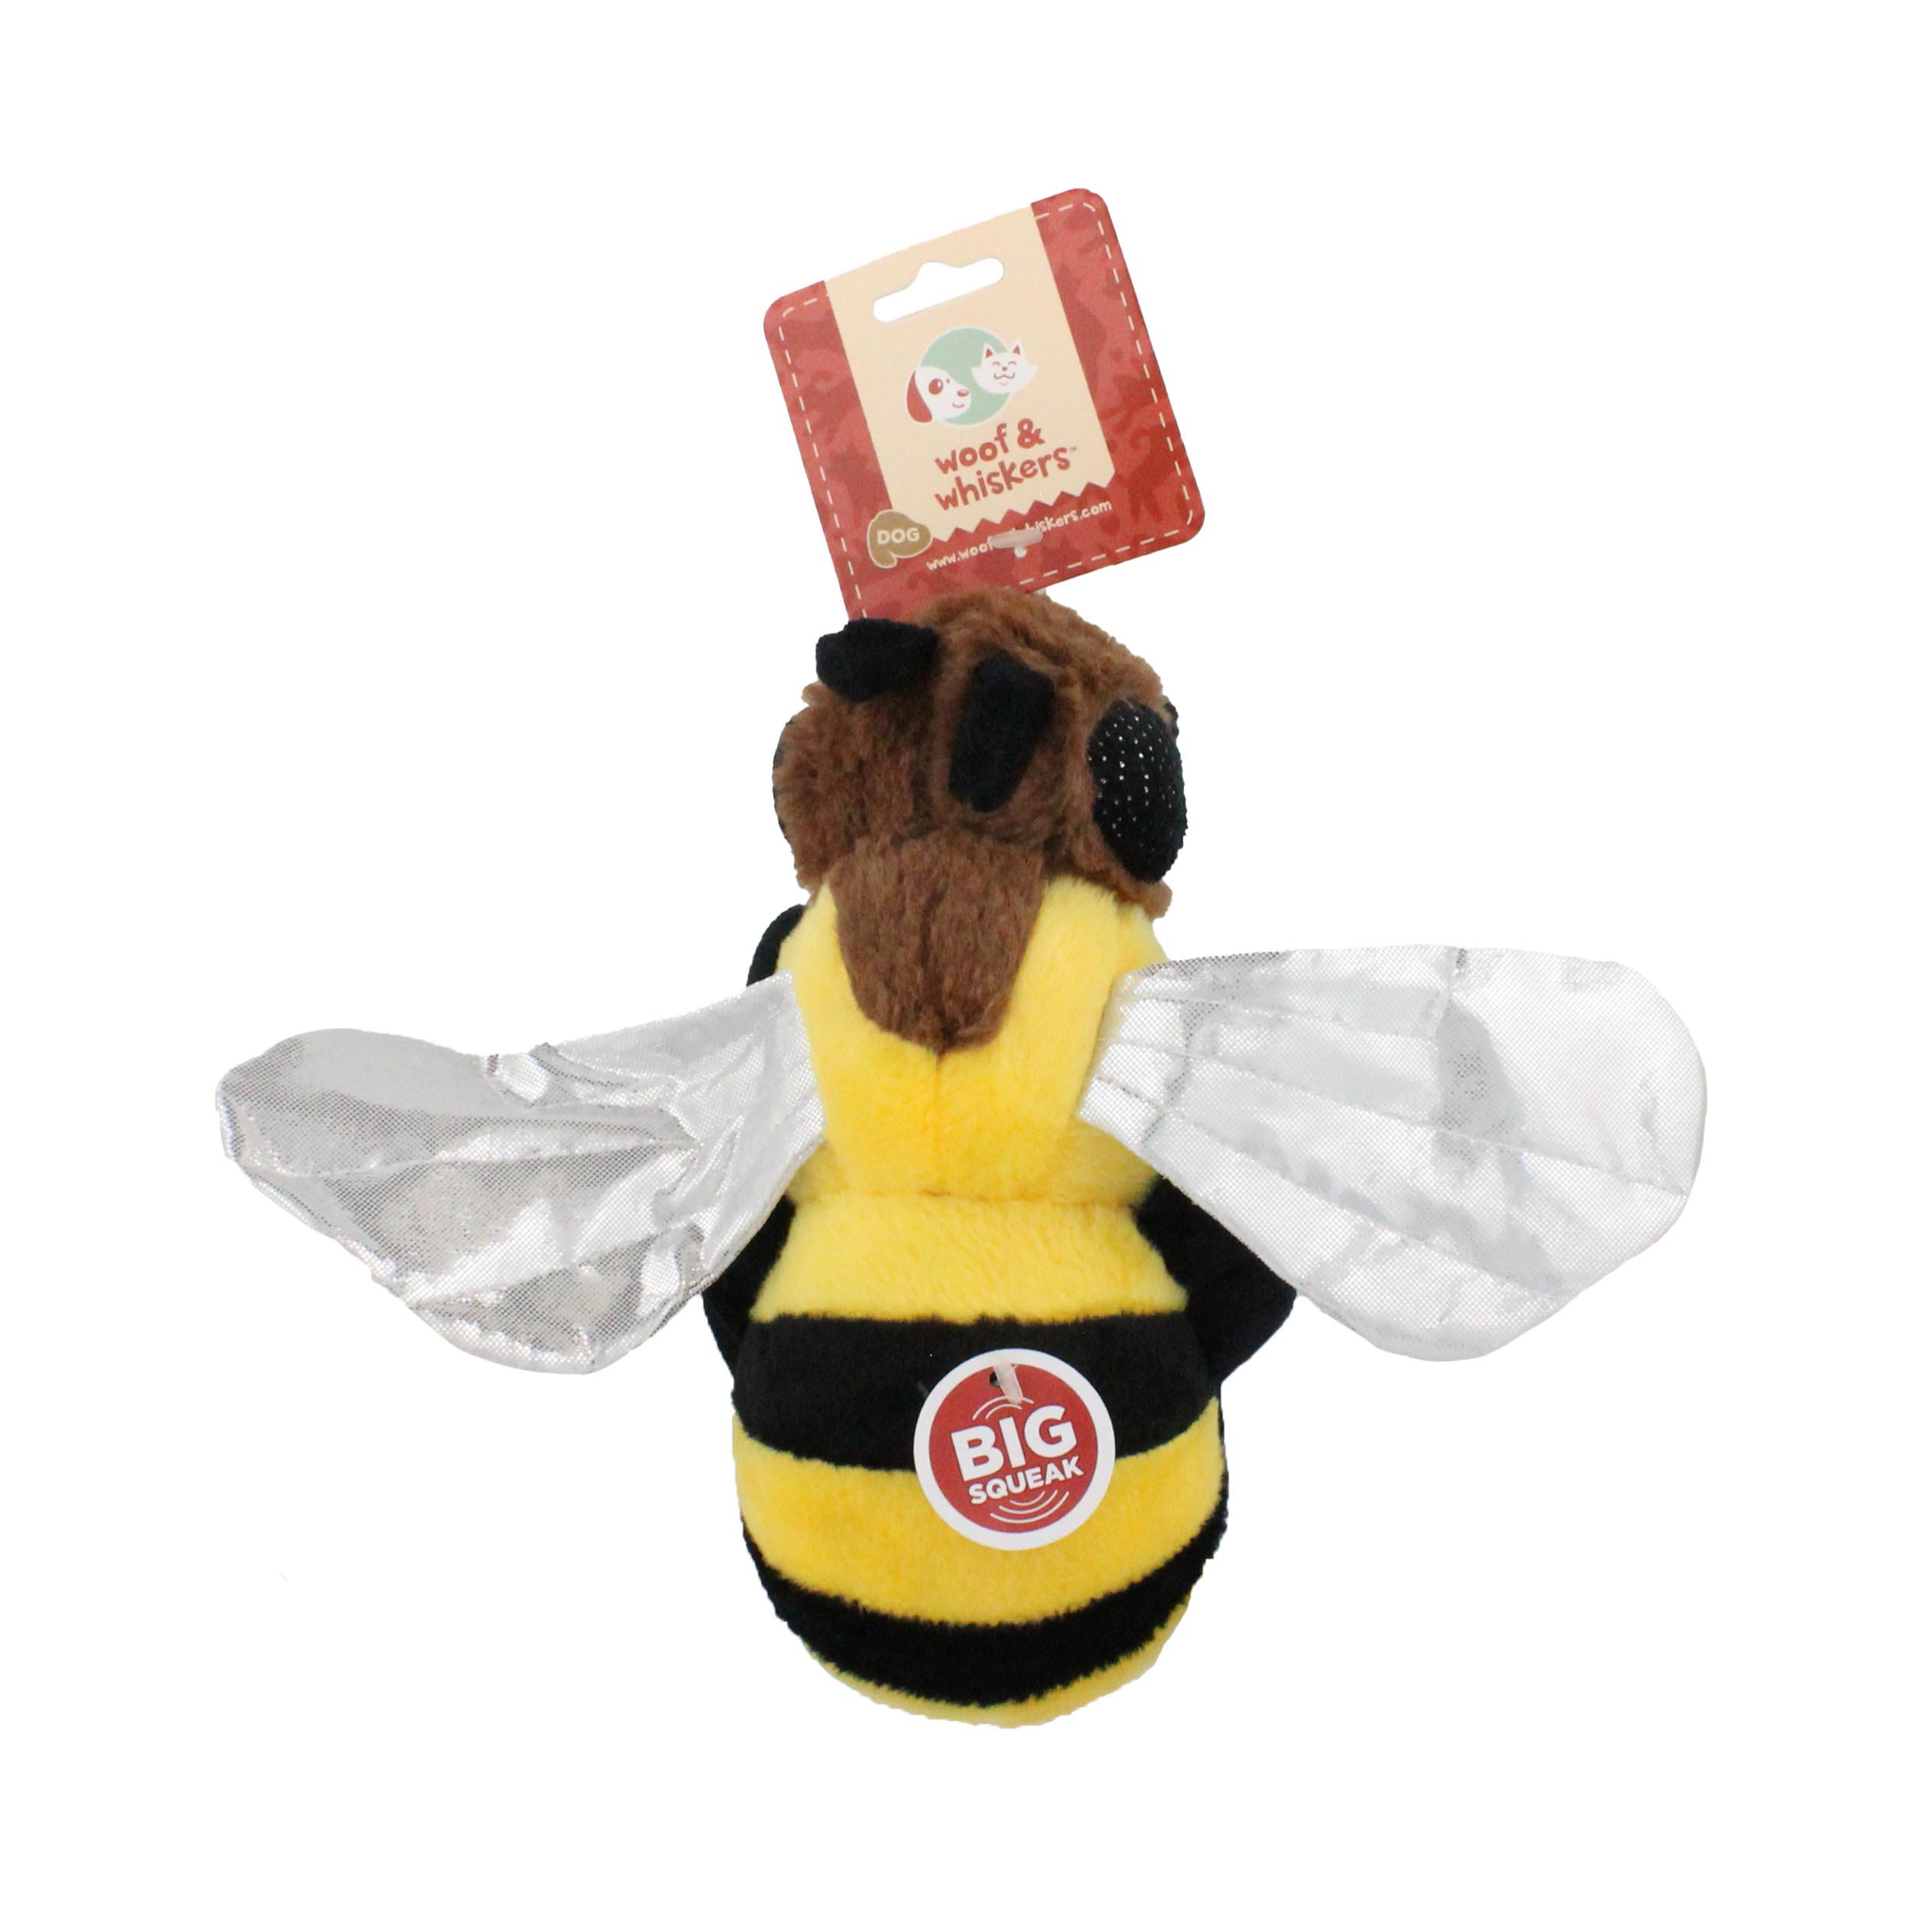 bumble bee plush